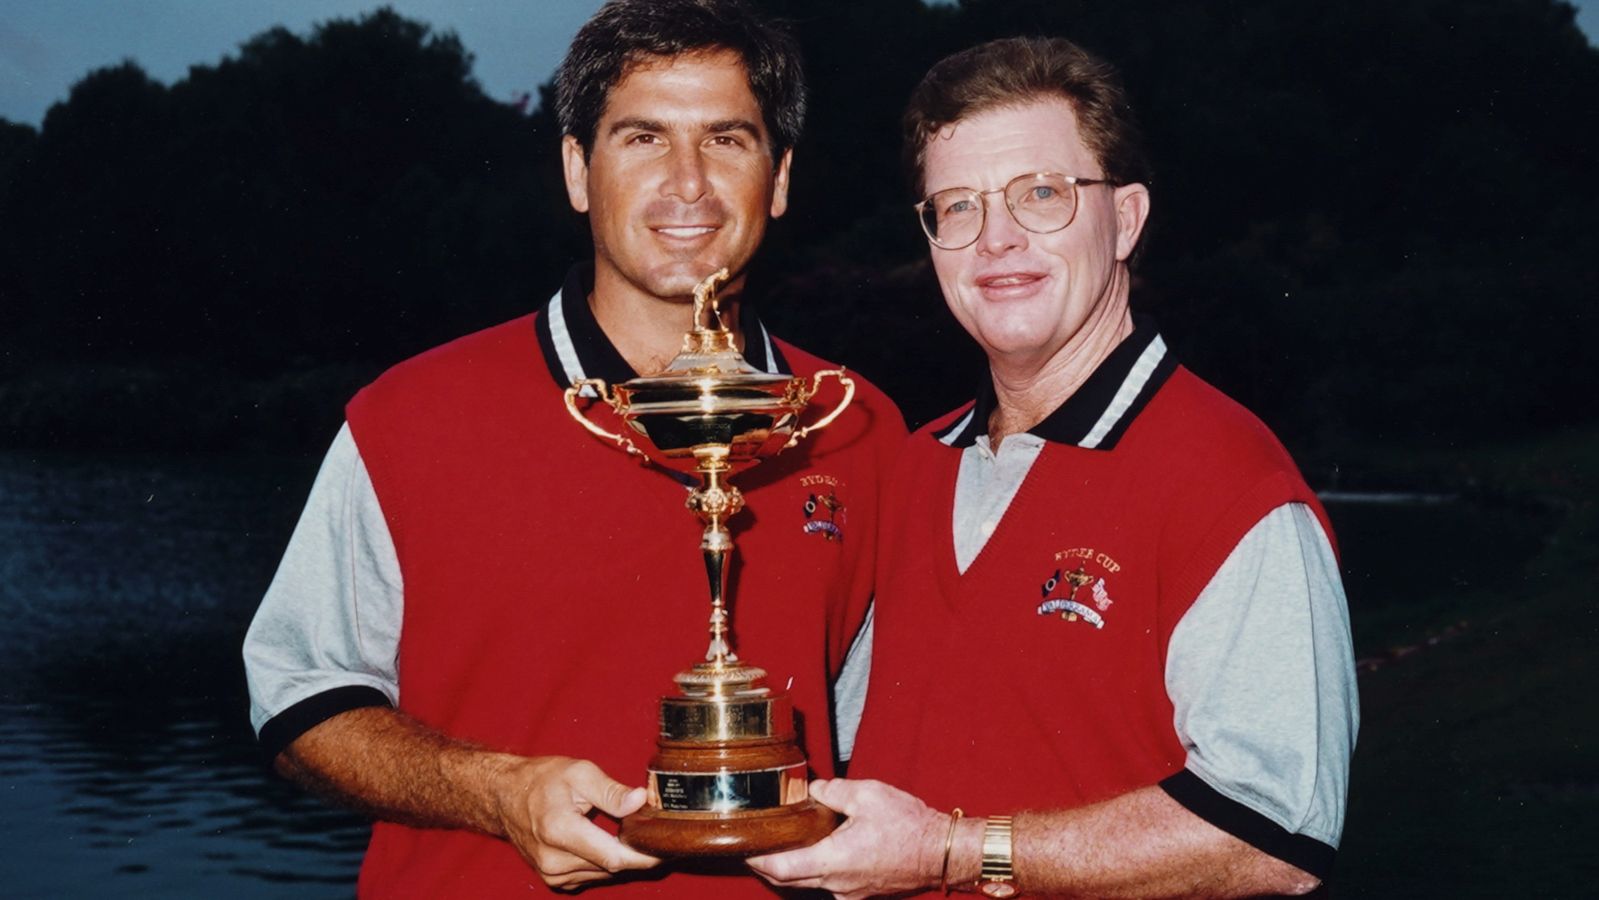 Gleich zwei Rekordmänner auf einem Bild: Sie feierten die höchsten Einzelsiege bei einem Ryder Cup. Tom Kite (r.) gewann 1989 gegen Howard Clark ebenso mit 8&7 wie 1997 Fred Couples gegen Ian Woosnam. © Getty Images